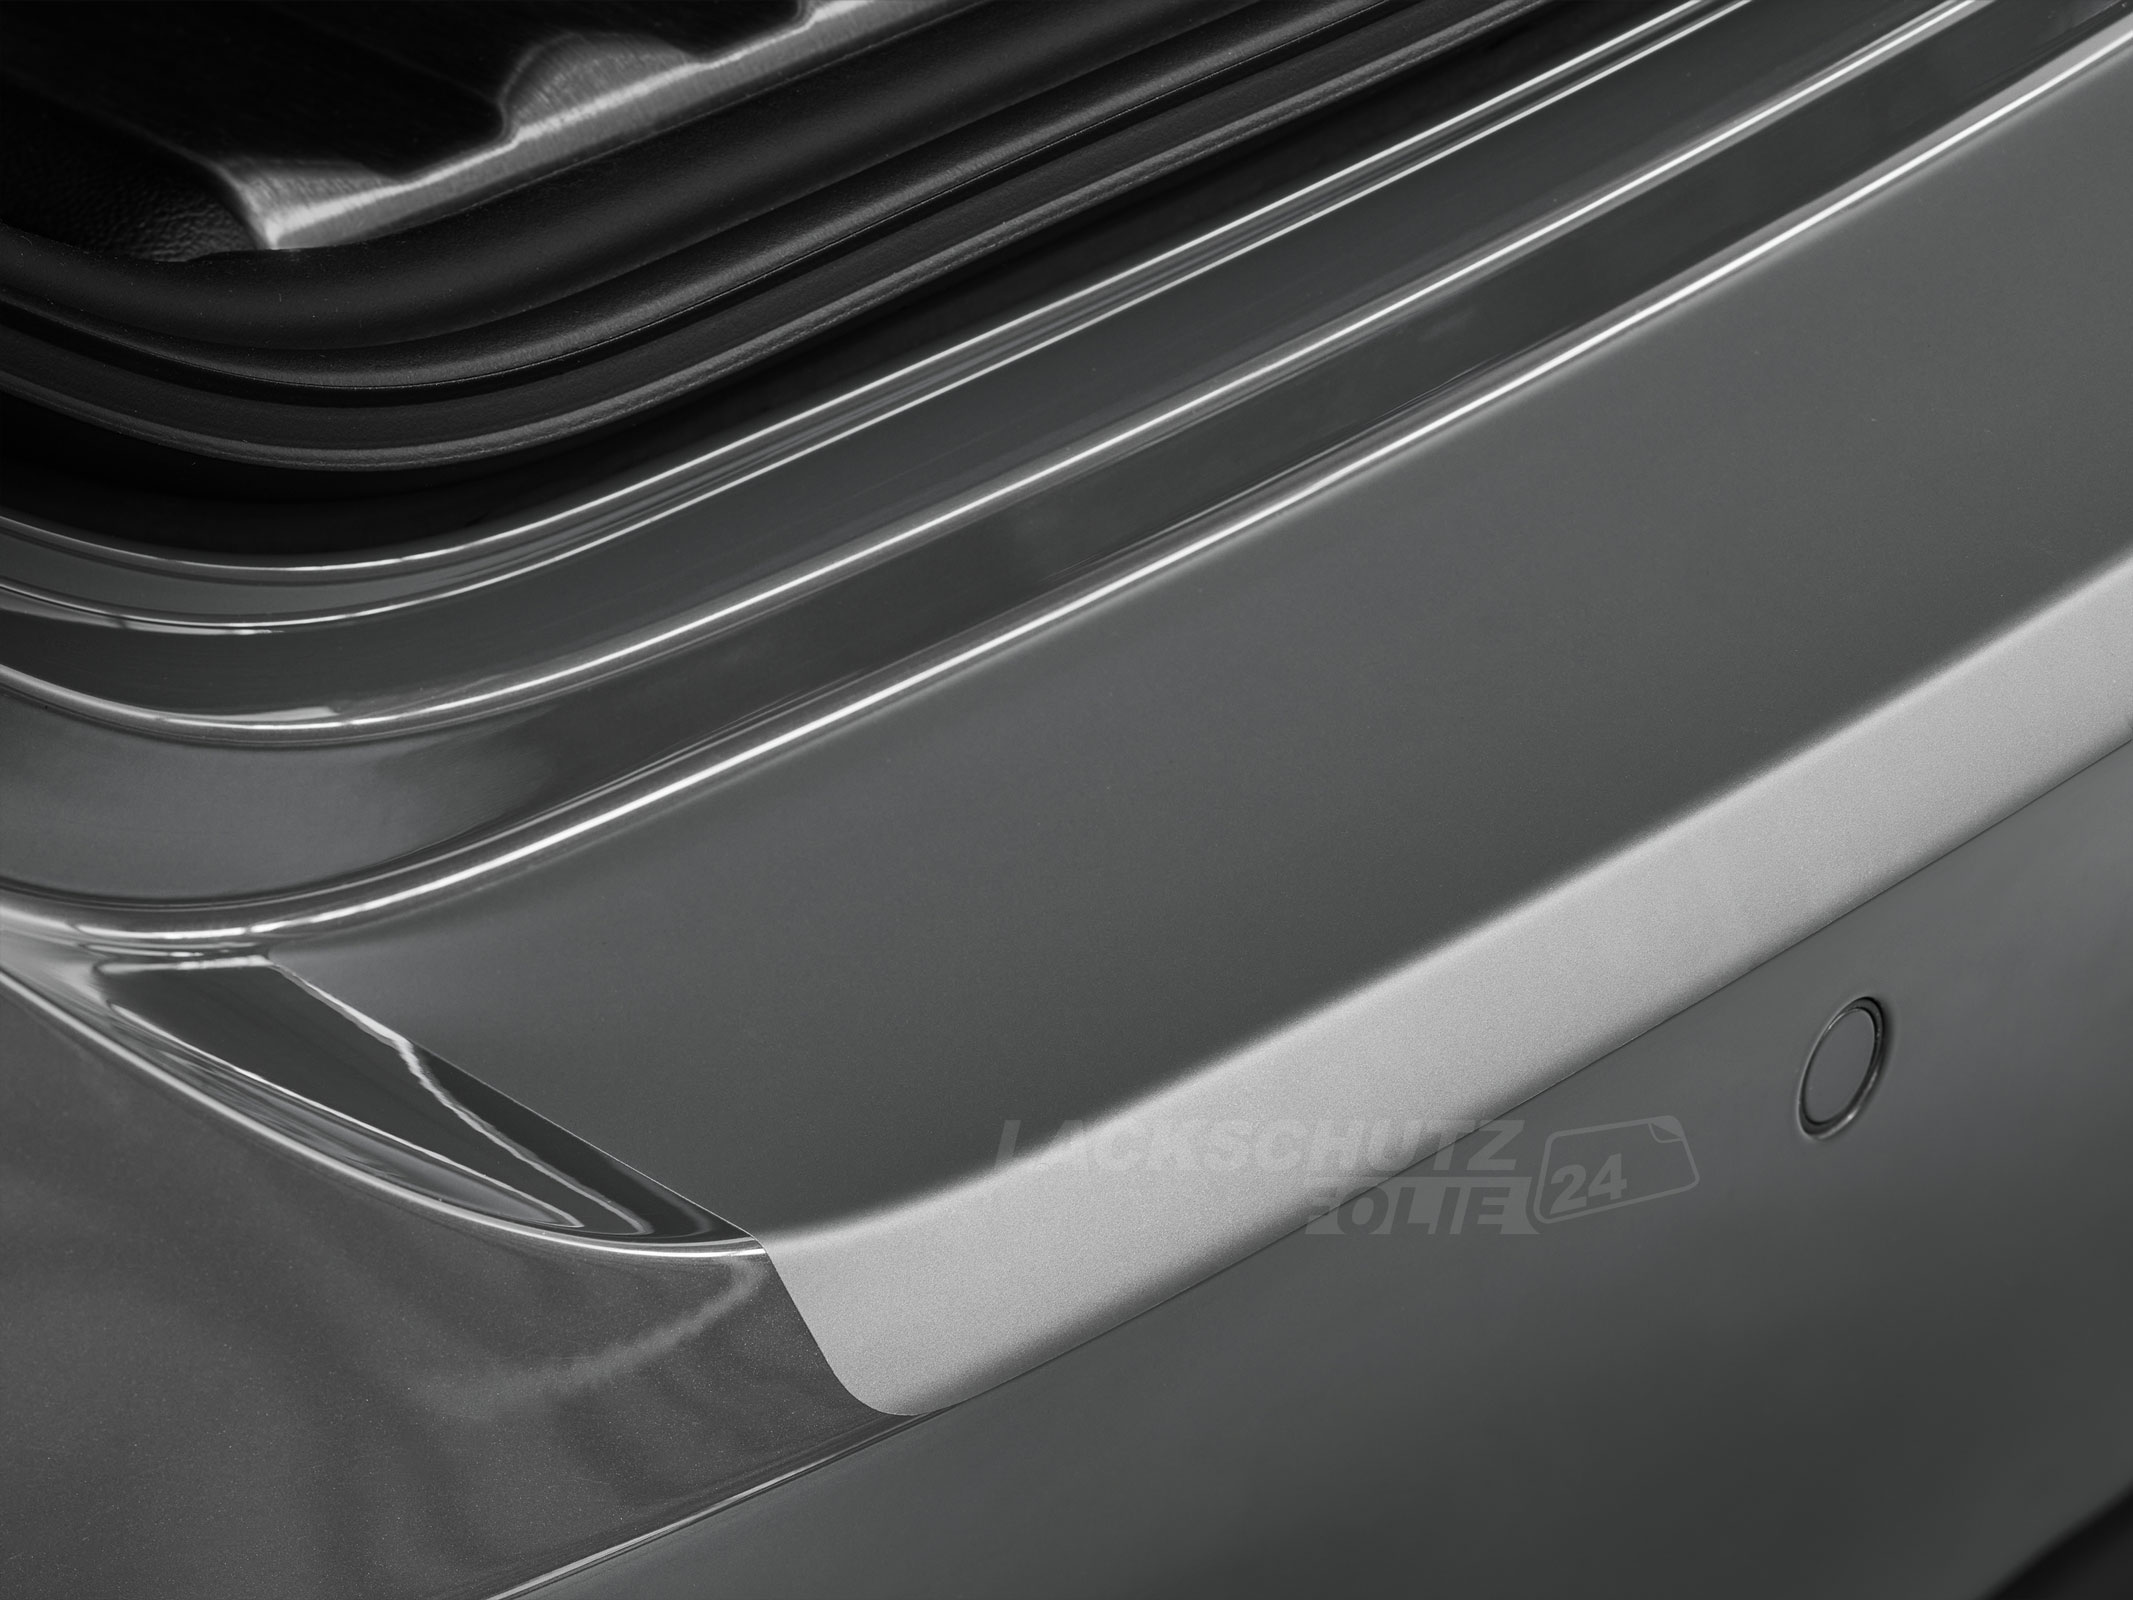 Ladekantenschutzfolie - Transparent Glatt MATT 110 µm stark  für Audi A5 Sportback Typ F5, ab BJ 10/2016 + Facelift